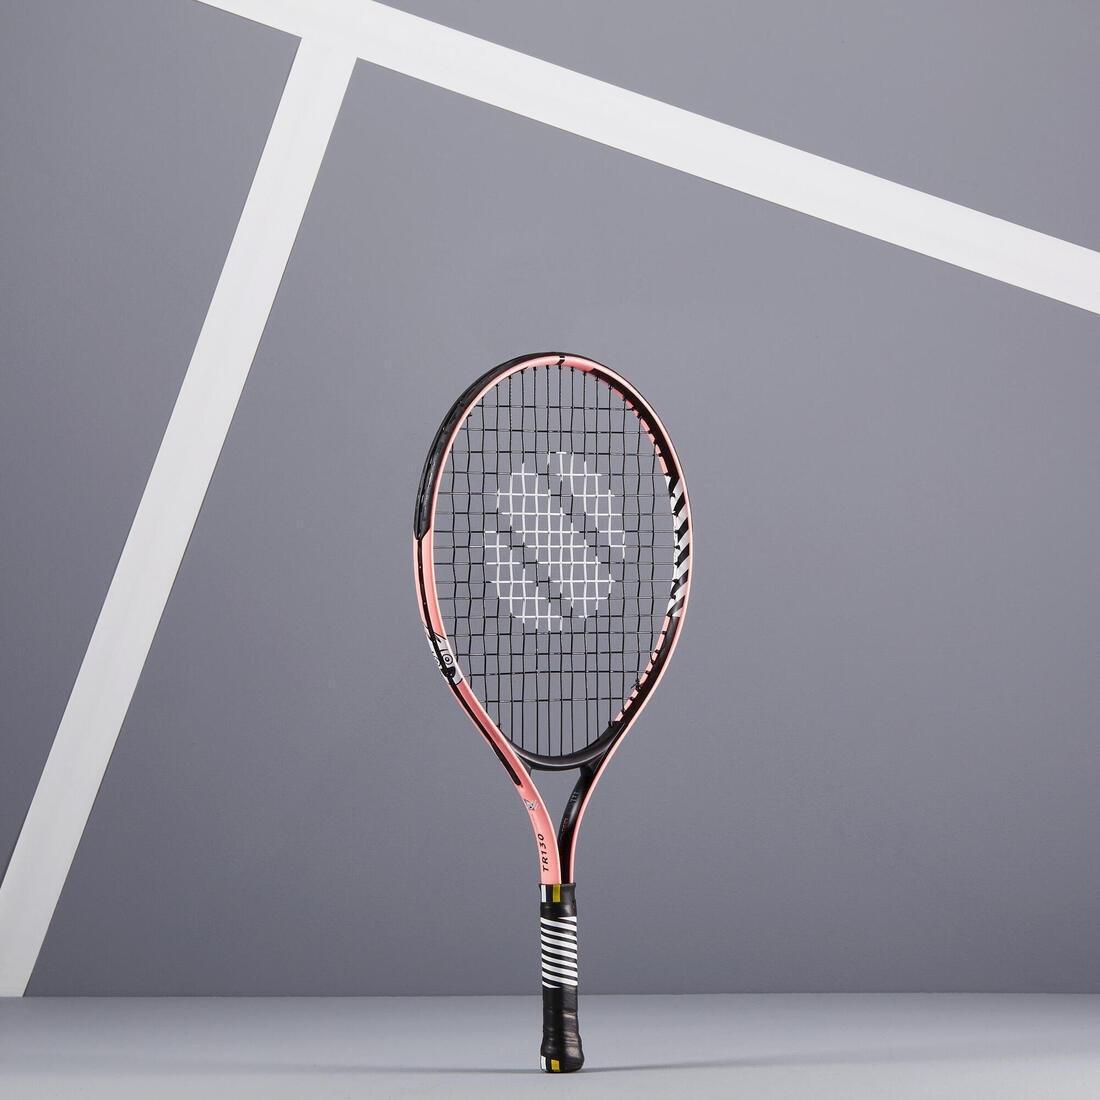 ARTENGO - Kids' 21 Tennis Racket TR130, Fluo orange